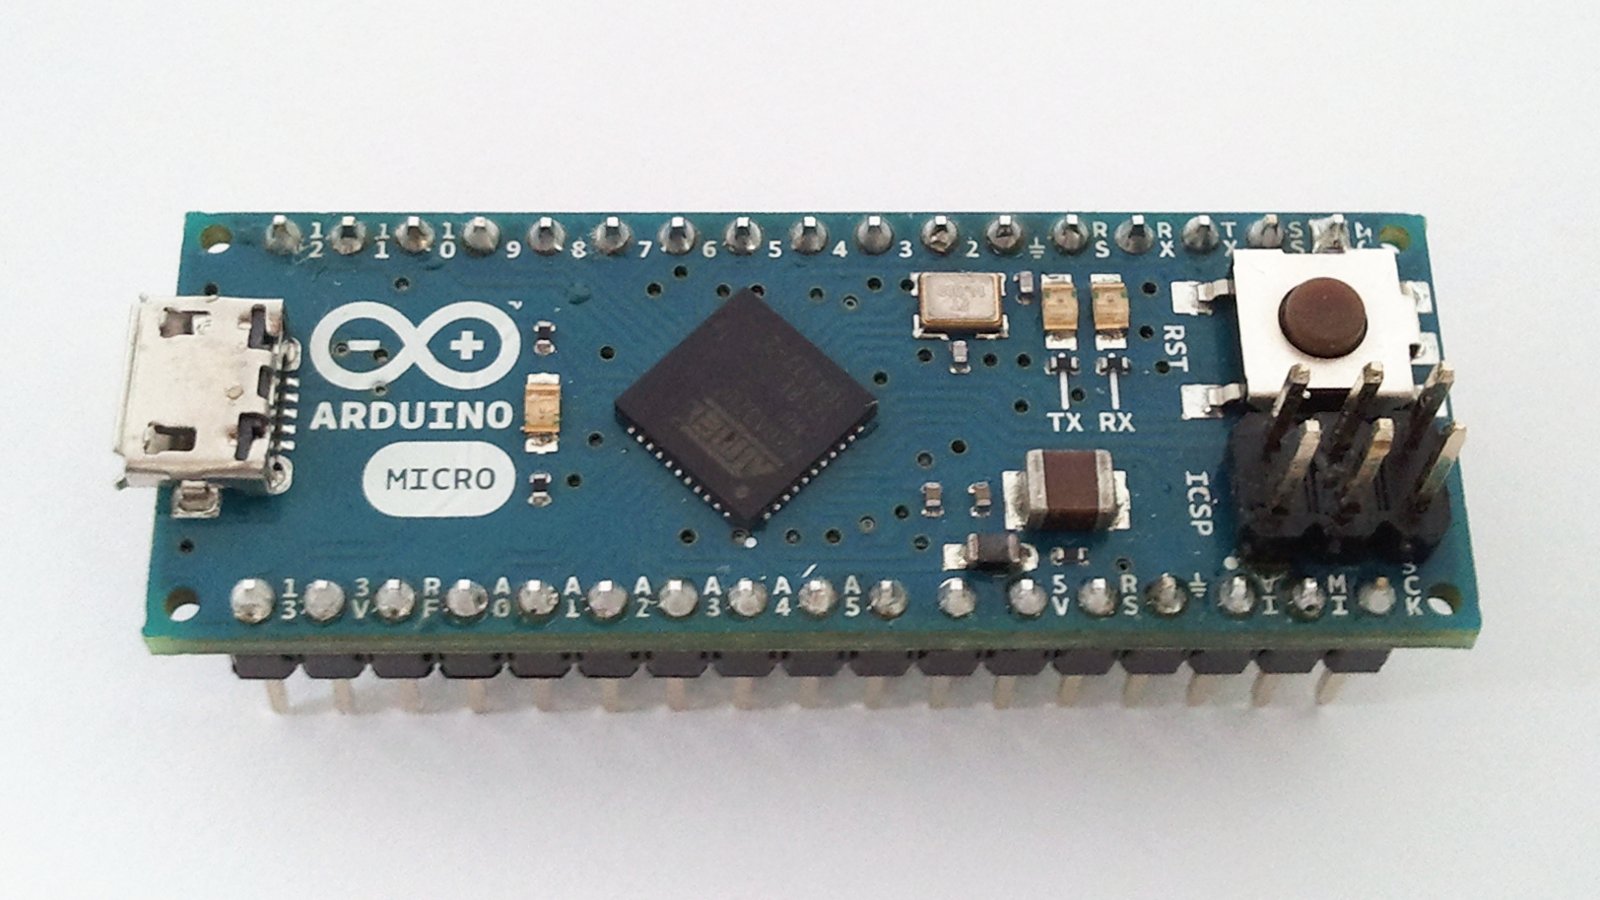 File:Arduino Micro.jpg - Wikipedia